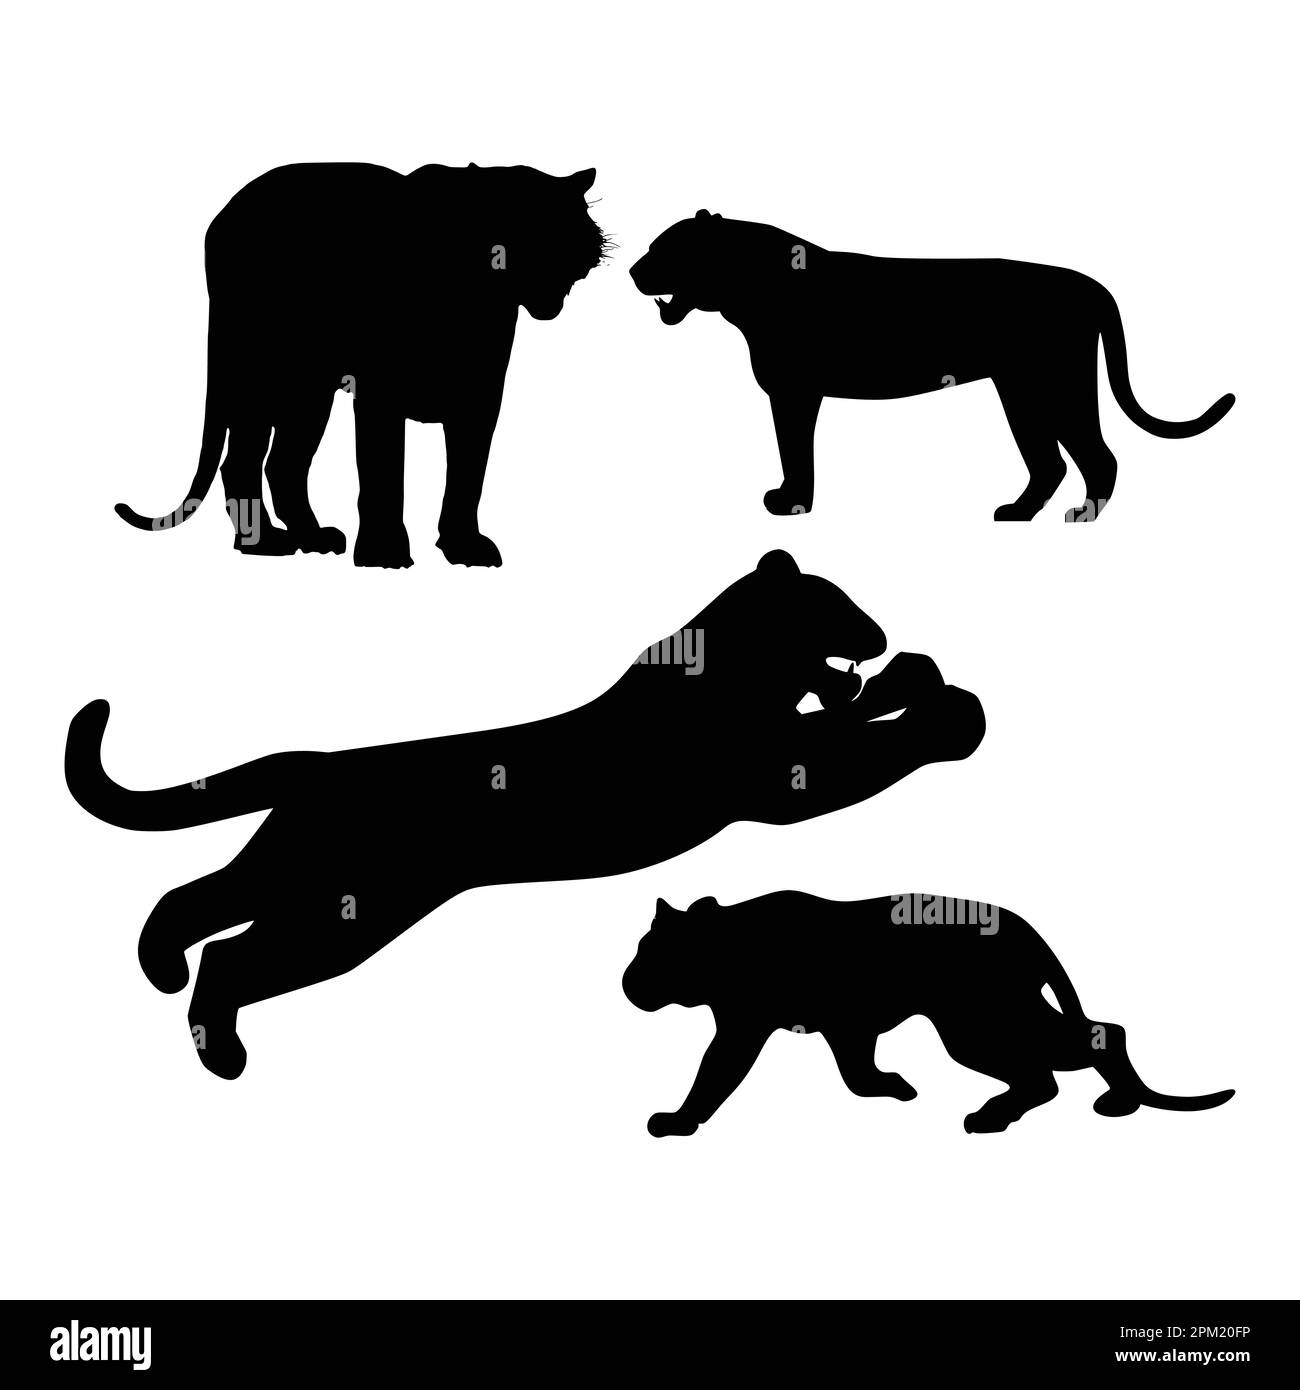 Une image en noir et blanc de trois silhouettes noires d'une panthère et d'un tigre. Illustration de Vecteur